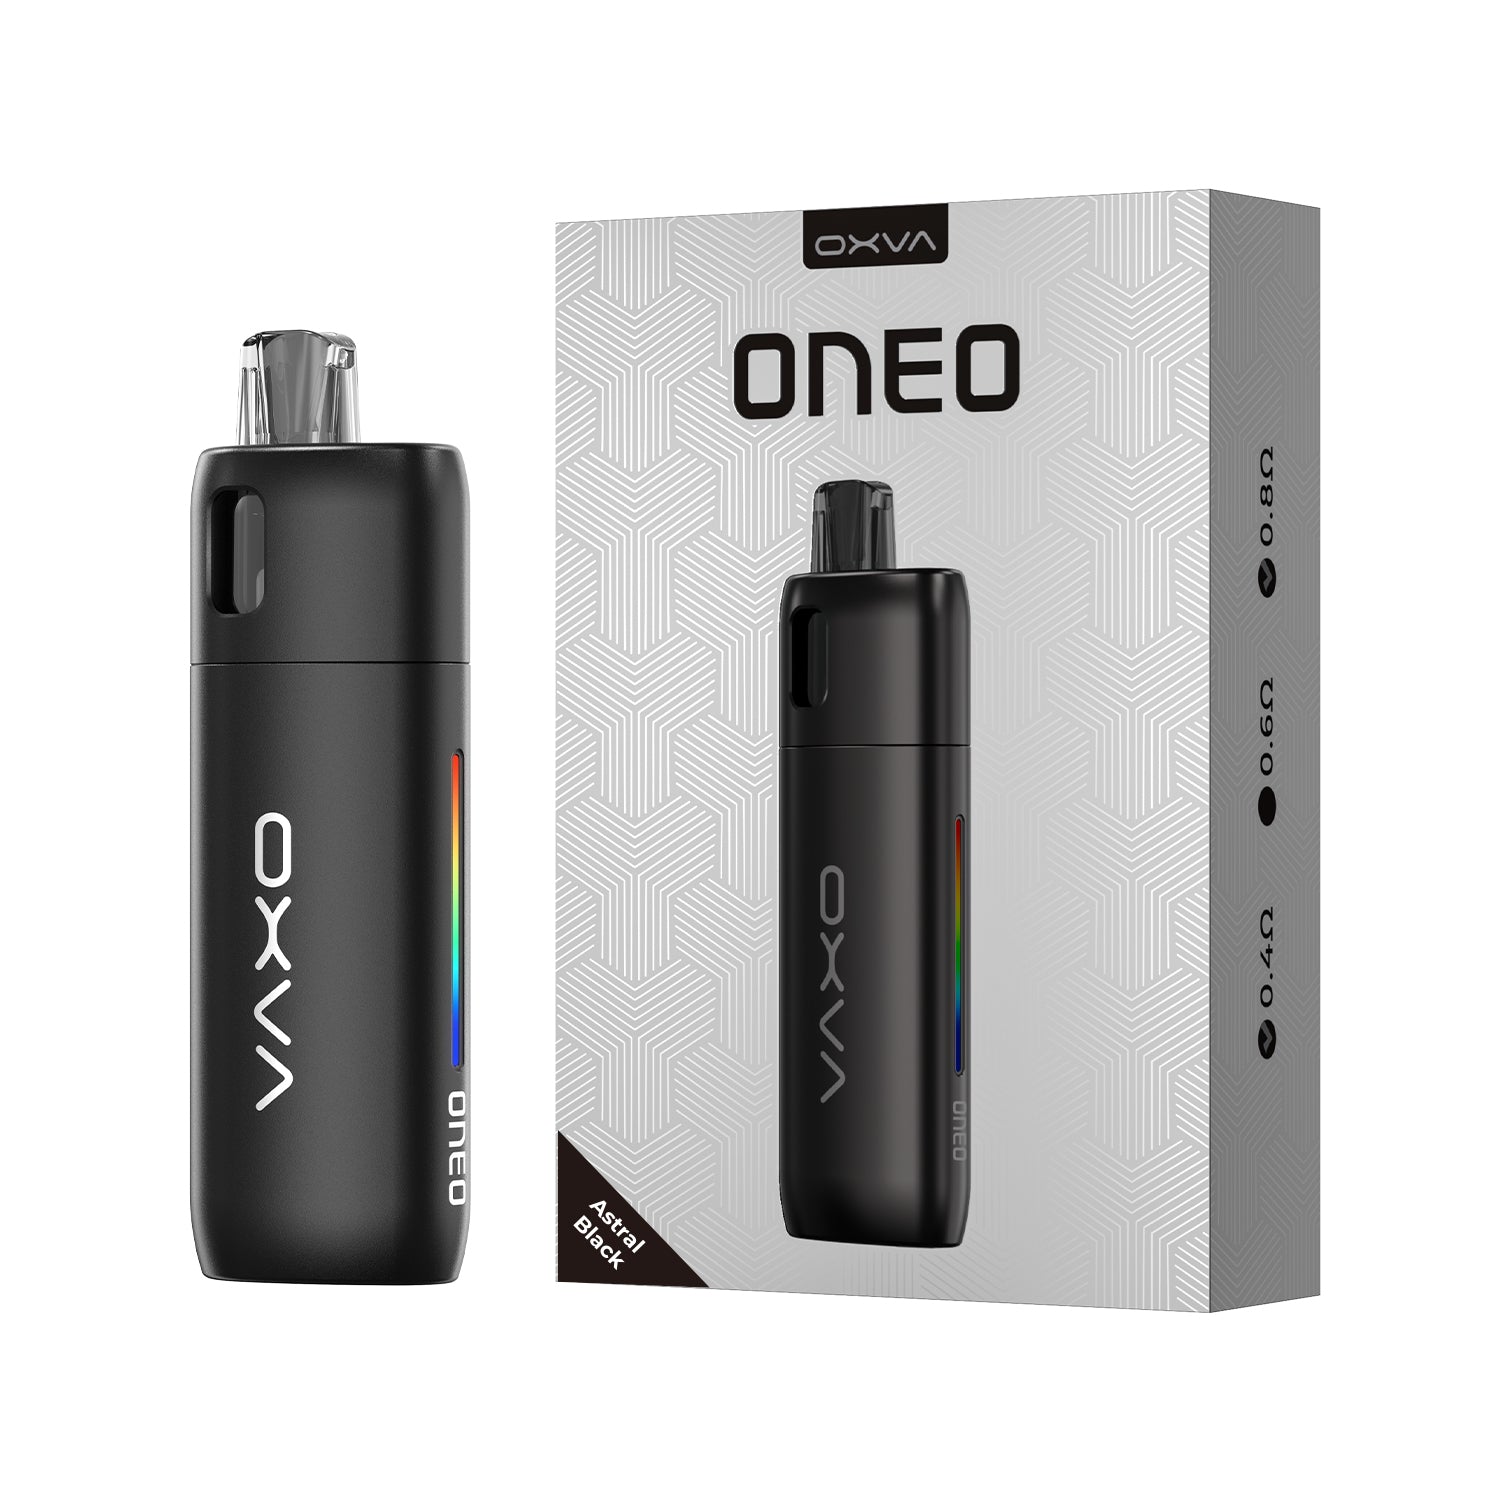 OXVA Oneo Pod Kit 1600mAh